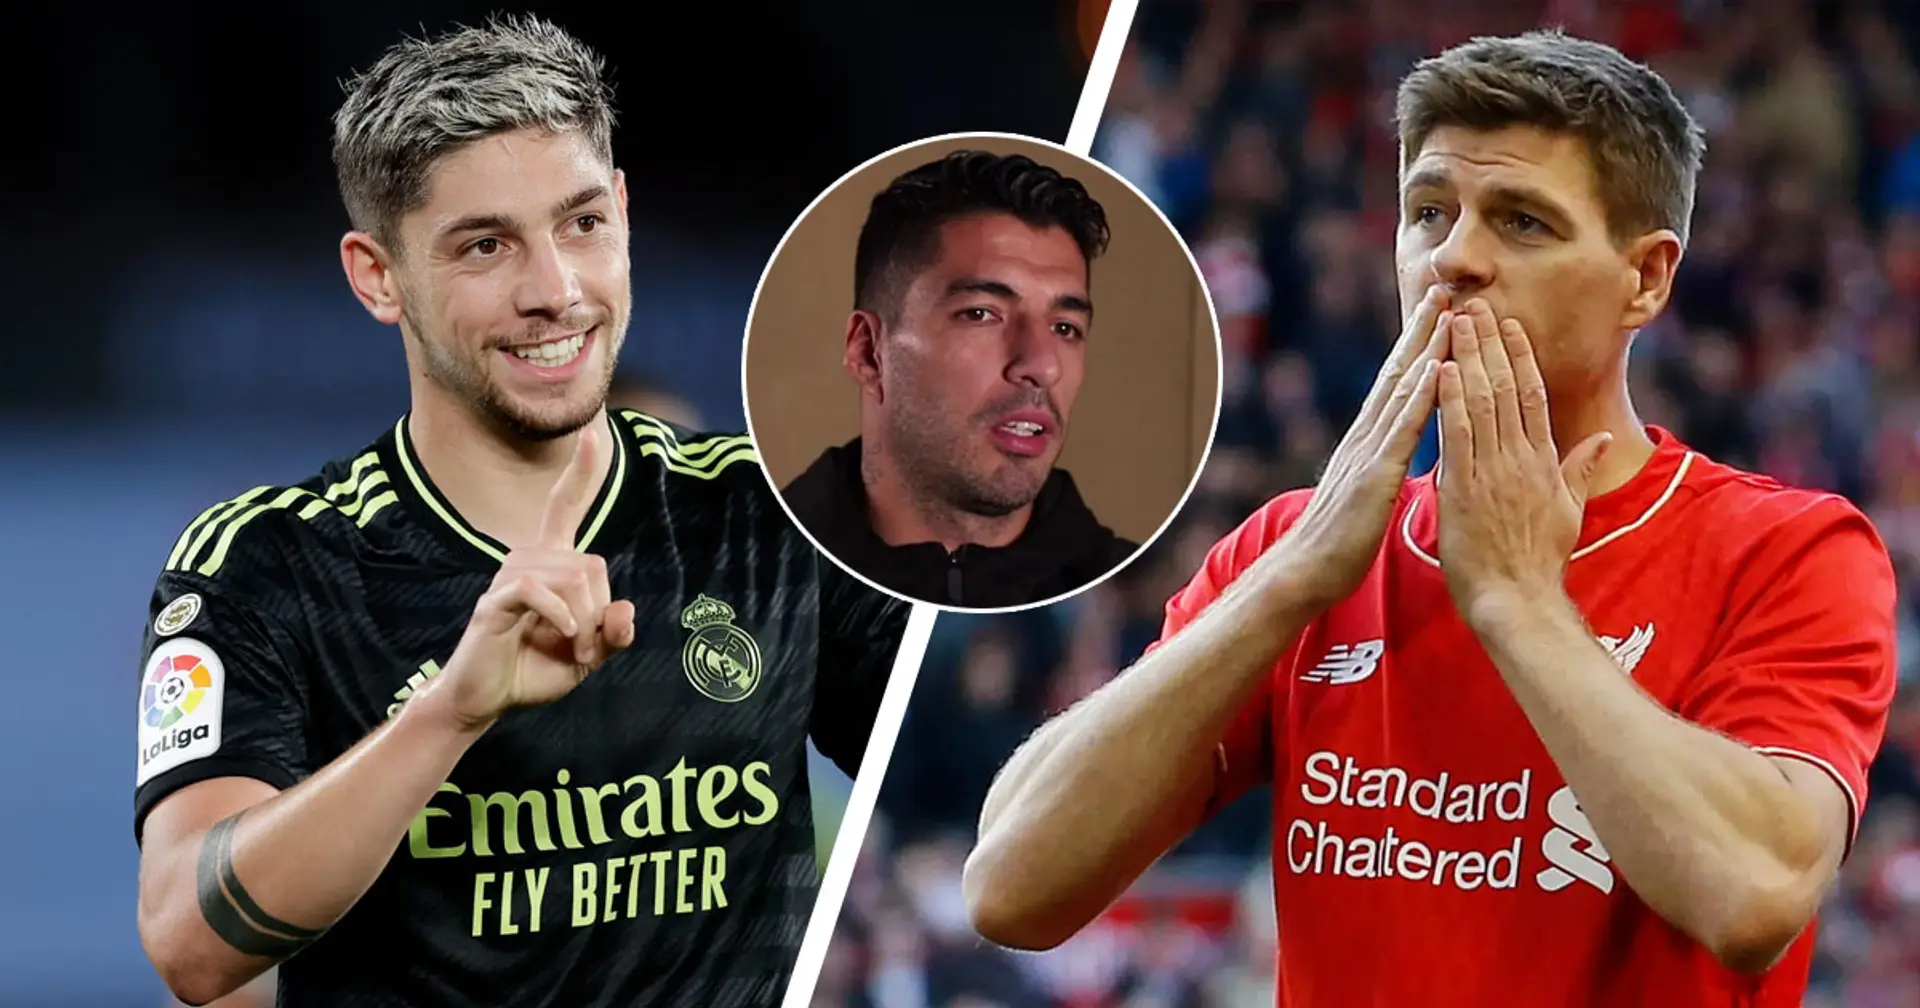 "Il m'a rappelé Gerrard": Luis Suarez sur sa première impression à propos de Fede Valverde